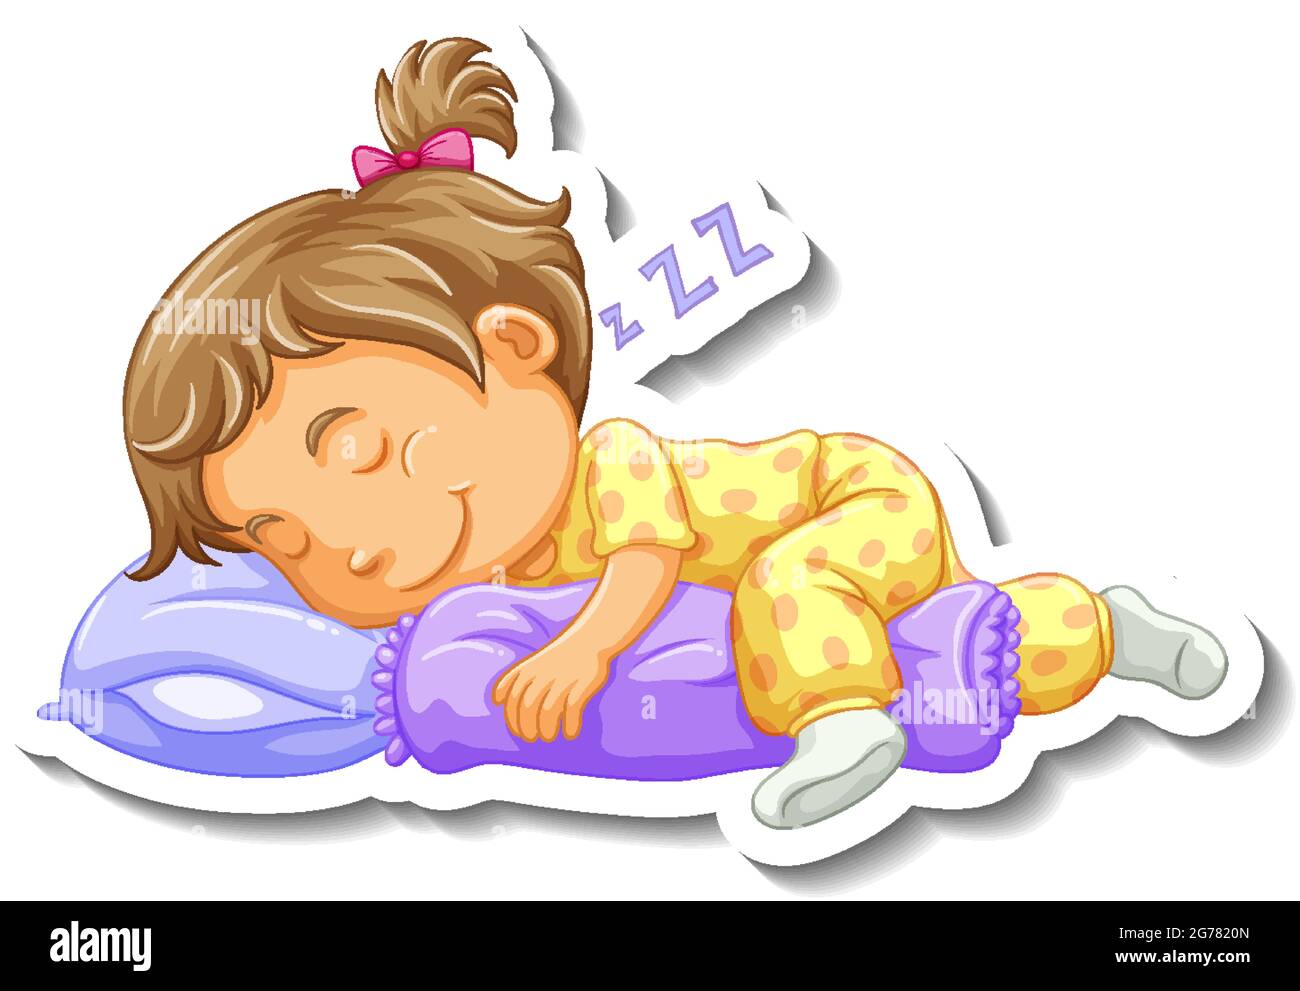 Modèle d'autocollant avec une petite fille endormi personnage de dessin animé illustration isolée Illustration de Vecteur